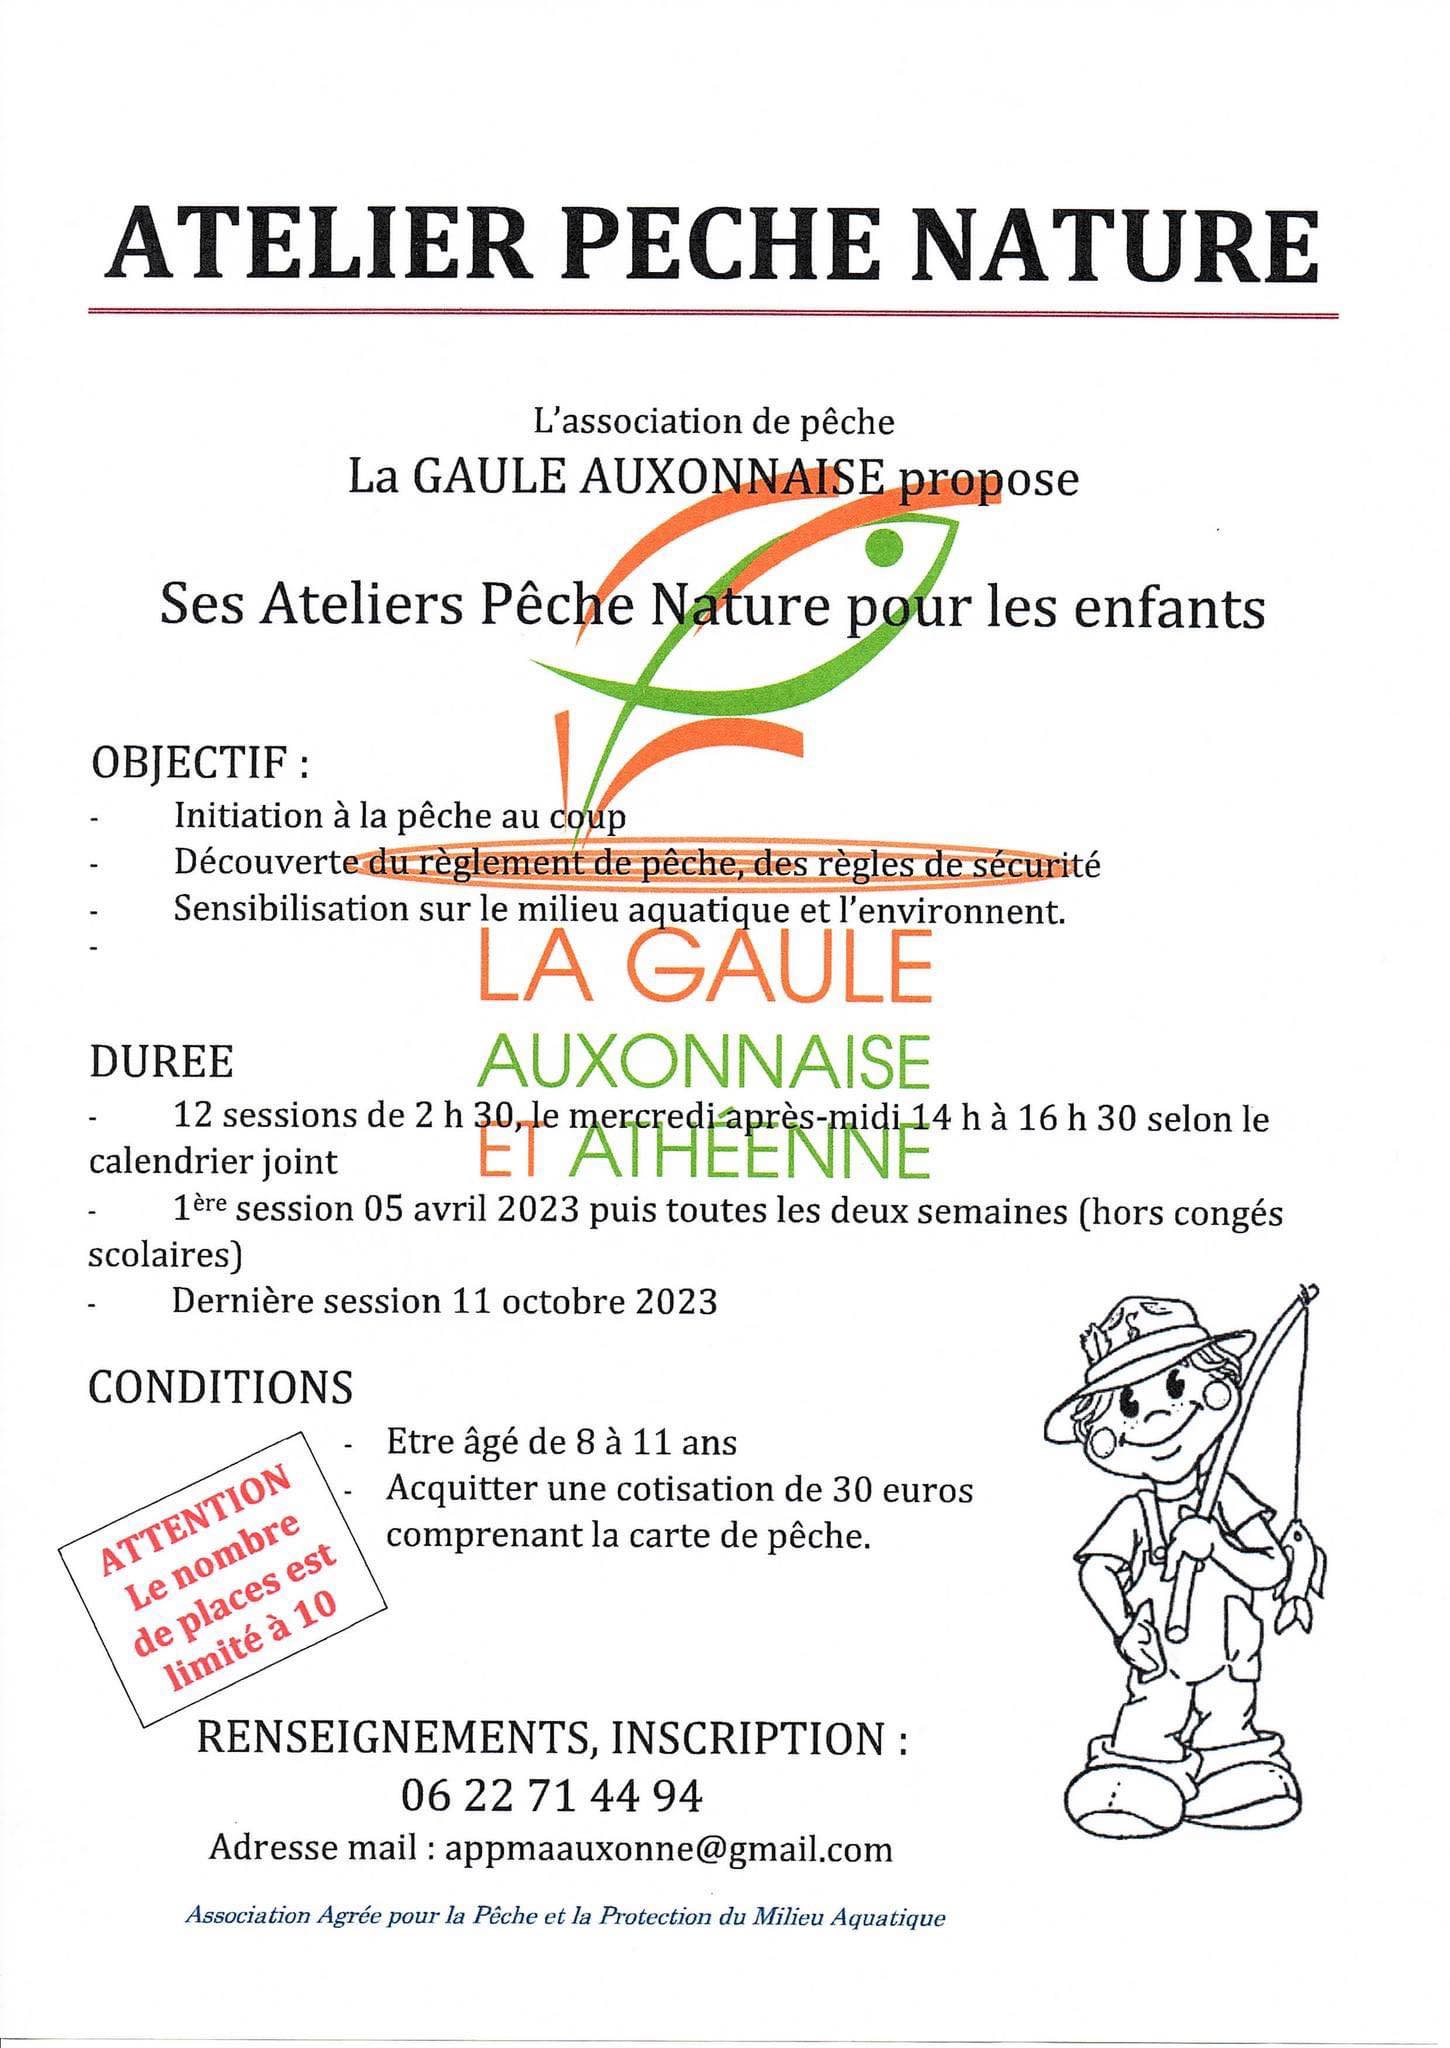 Ateliers pêche Gaulle Auxonnaise 2023 - Crédits : La Gaule Auxonnaise